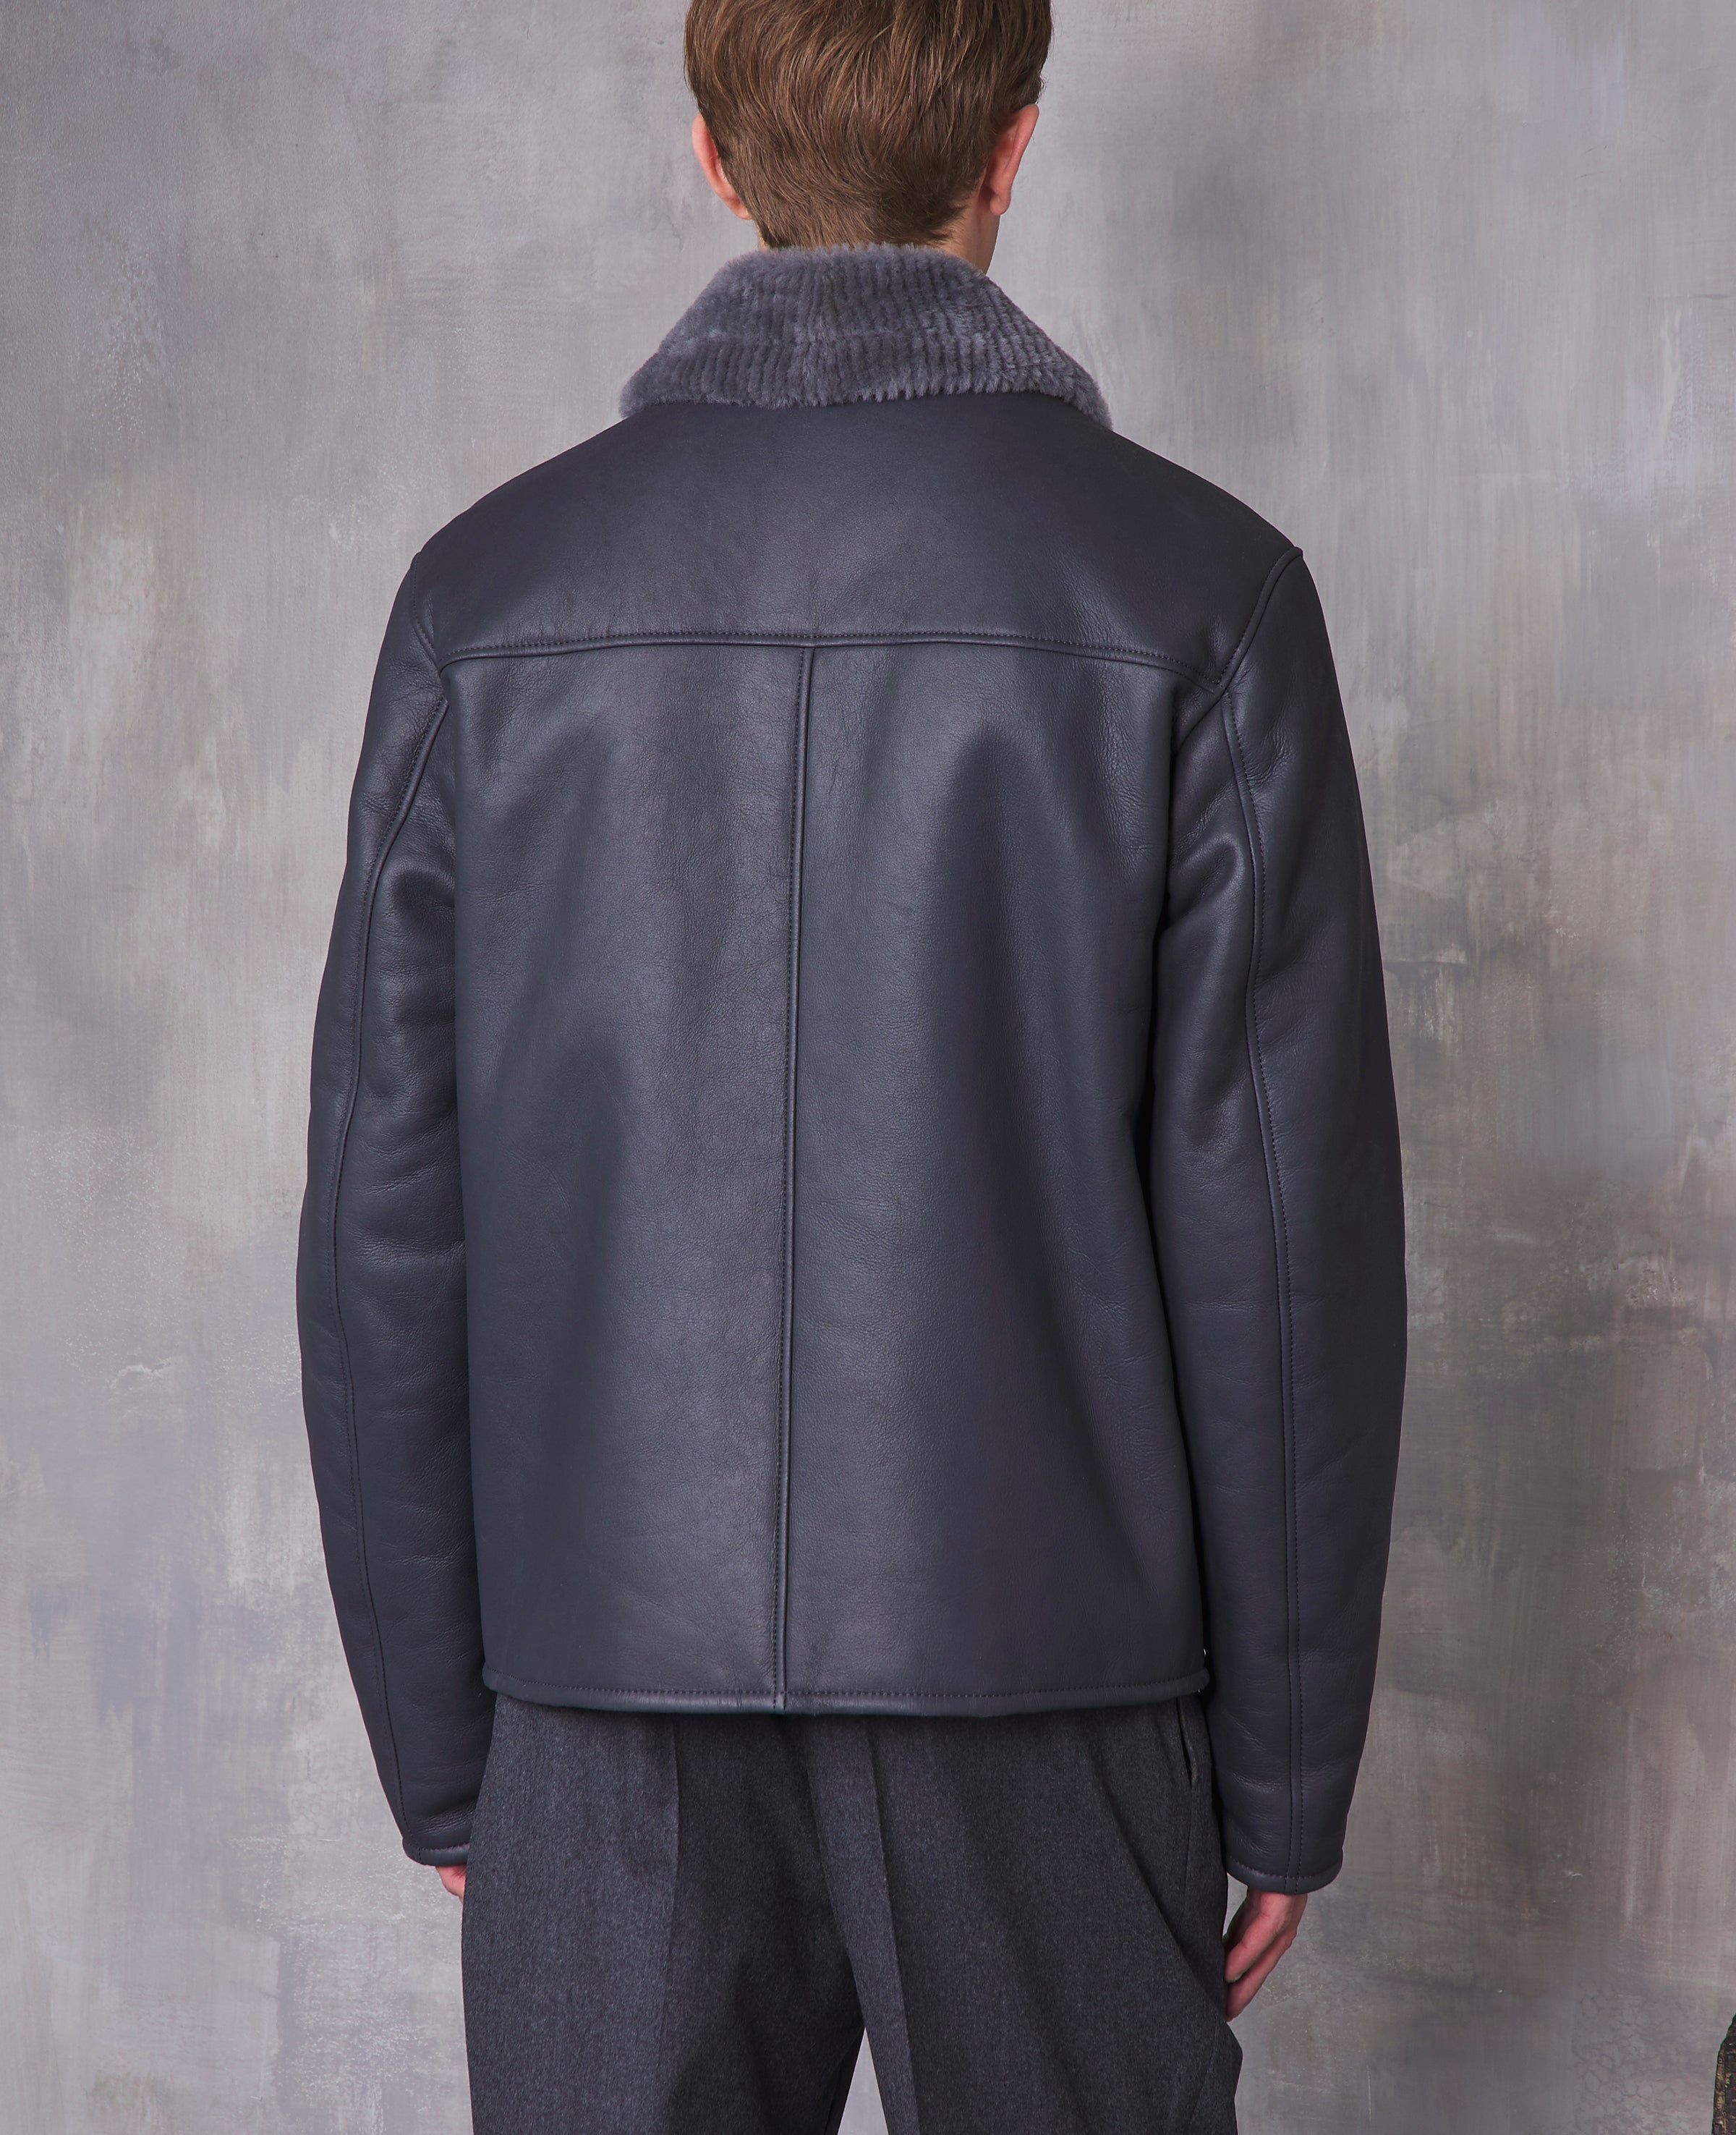 おトク】 frankleader chacoal dyed jacket - ジャケット/アウター